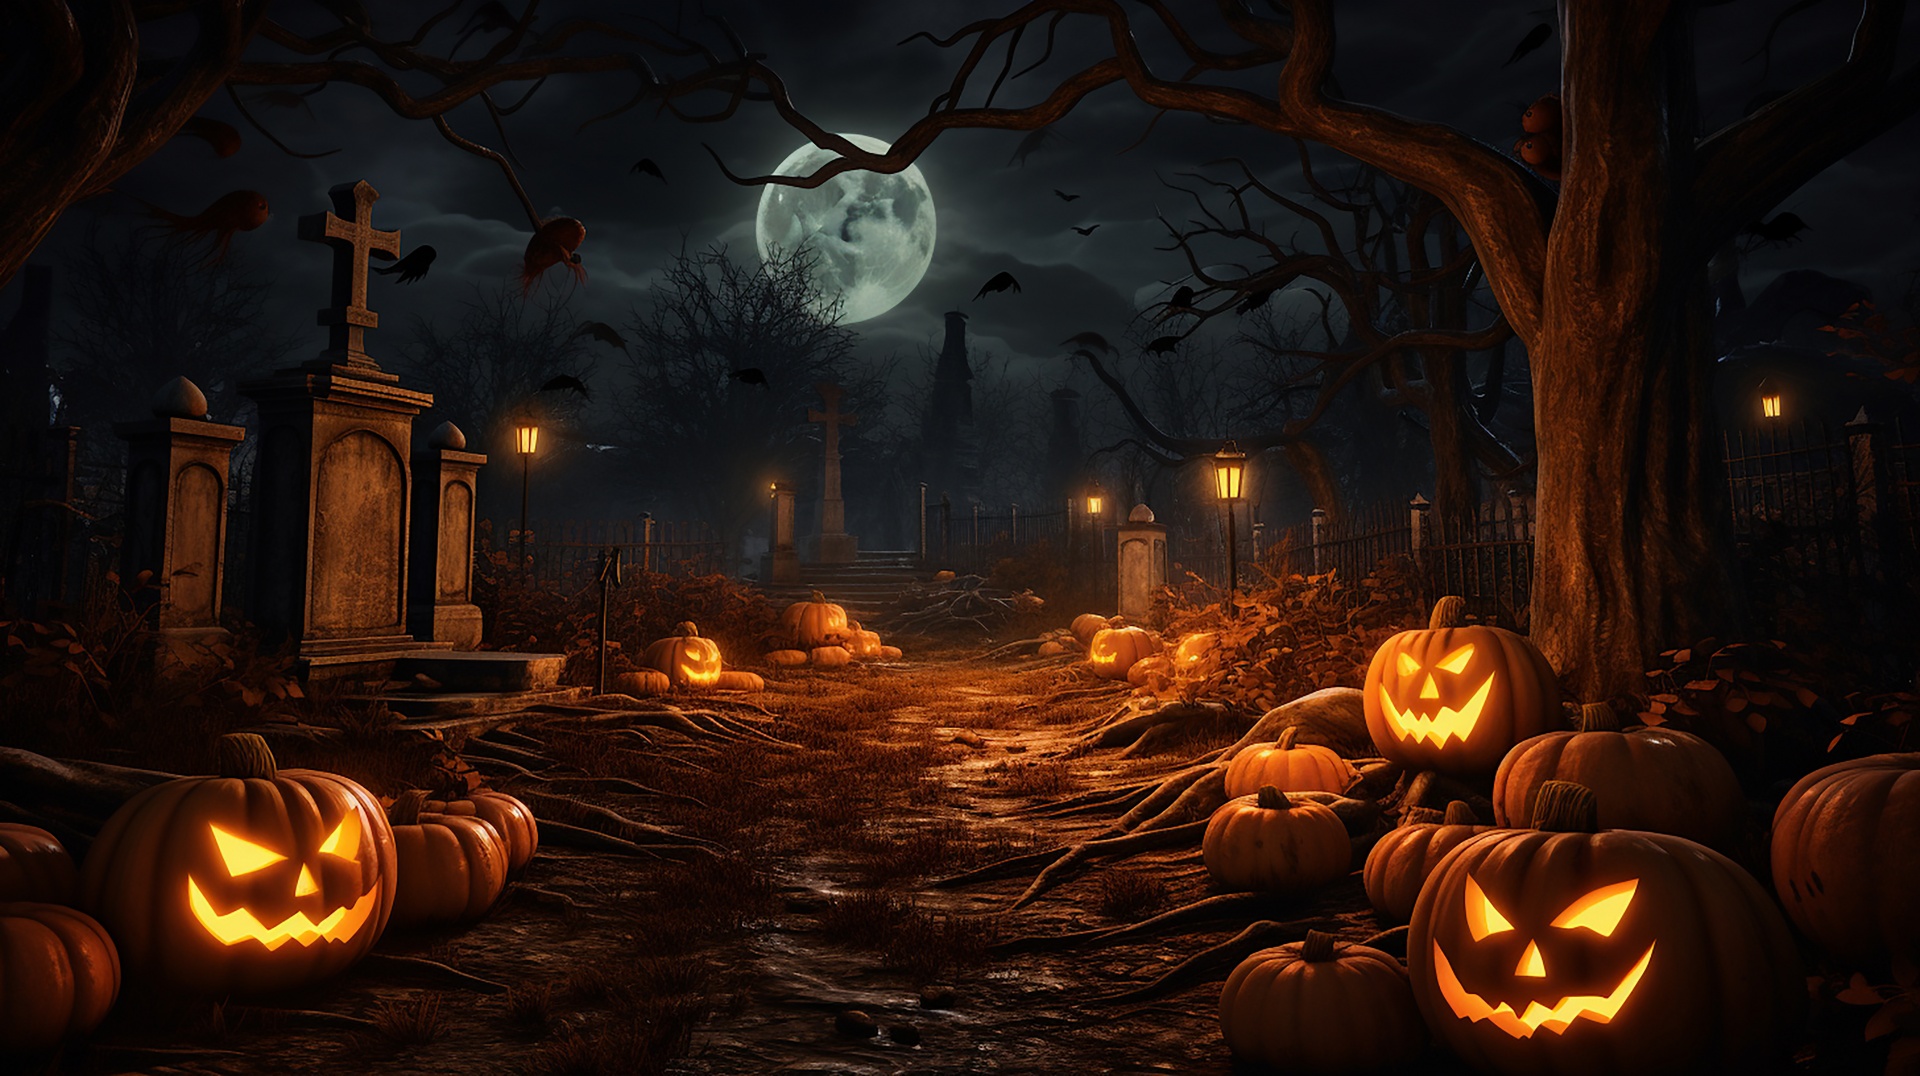 Halloween Pumpkins Night Illustration Free Stock Photo - Public Domain ...